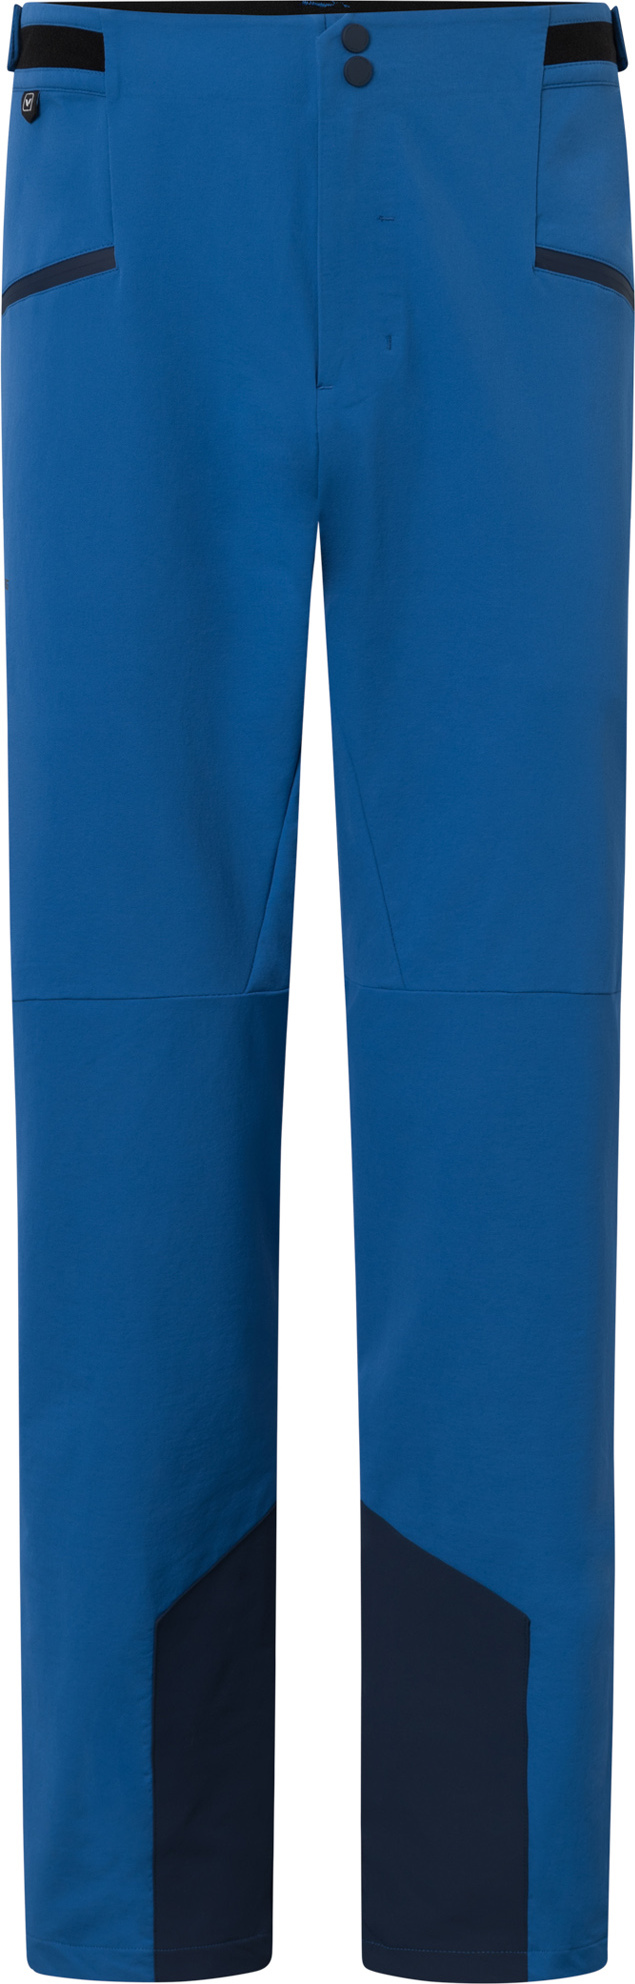 Pánské outdoorové kalhoty VIKING Expander Warm modrá Velikost: L